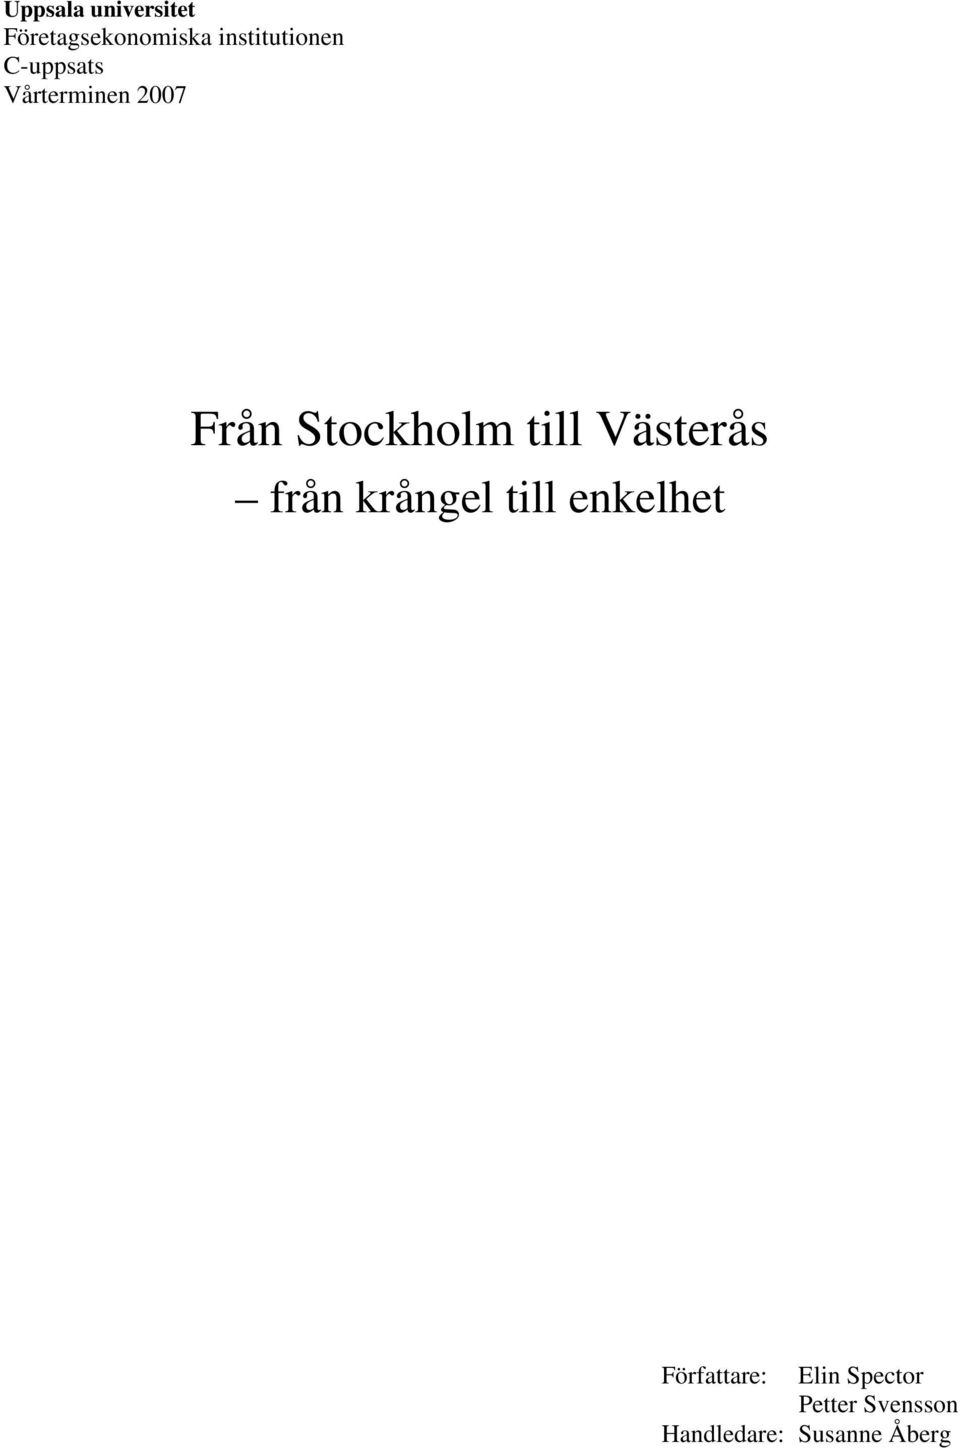 Stockholm till Västerås från krångel till enkelhet